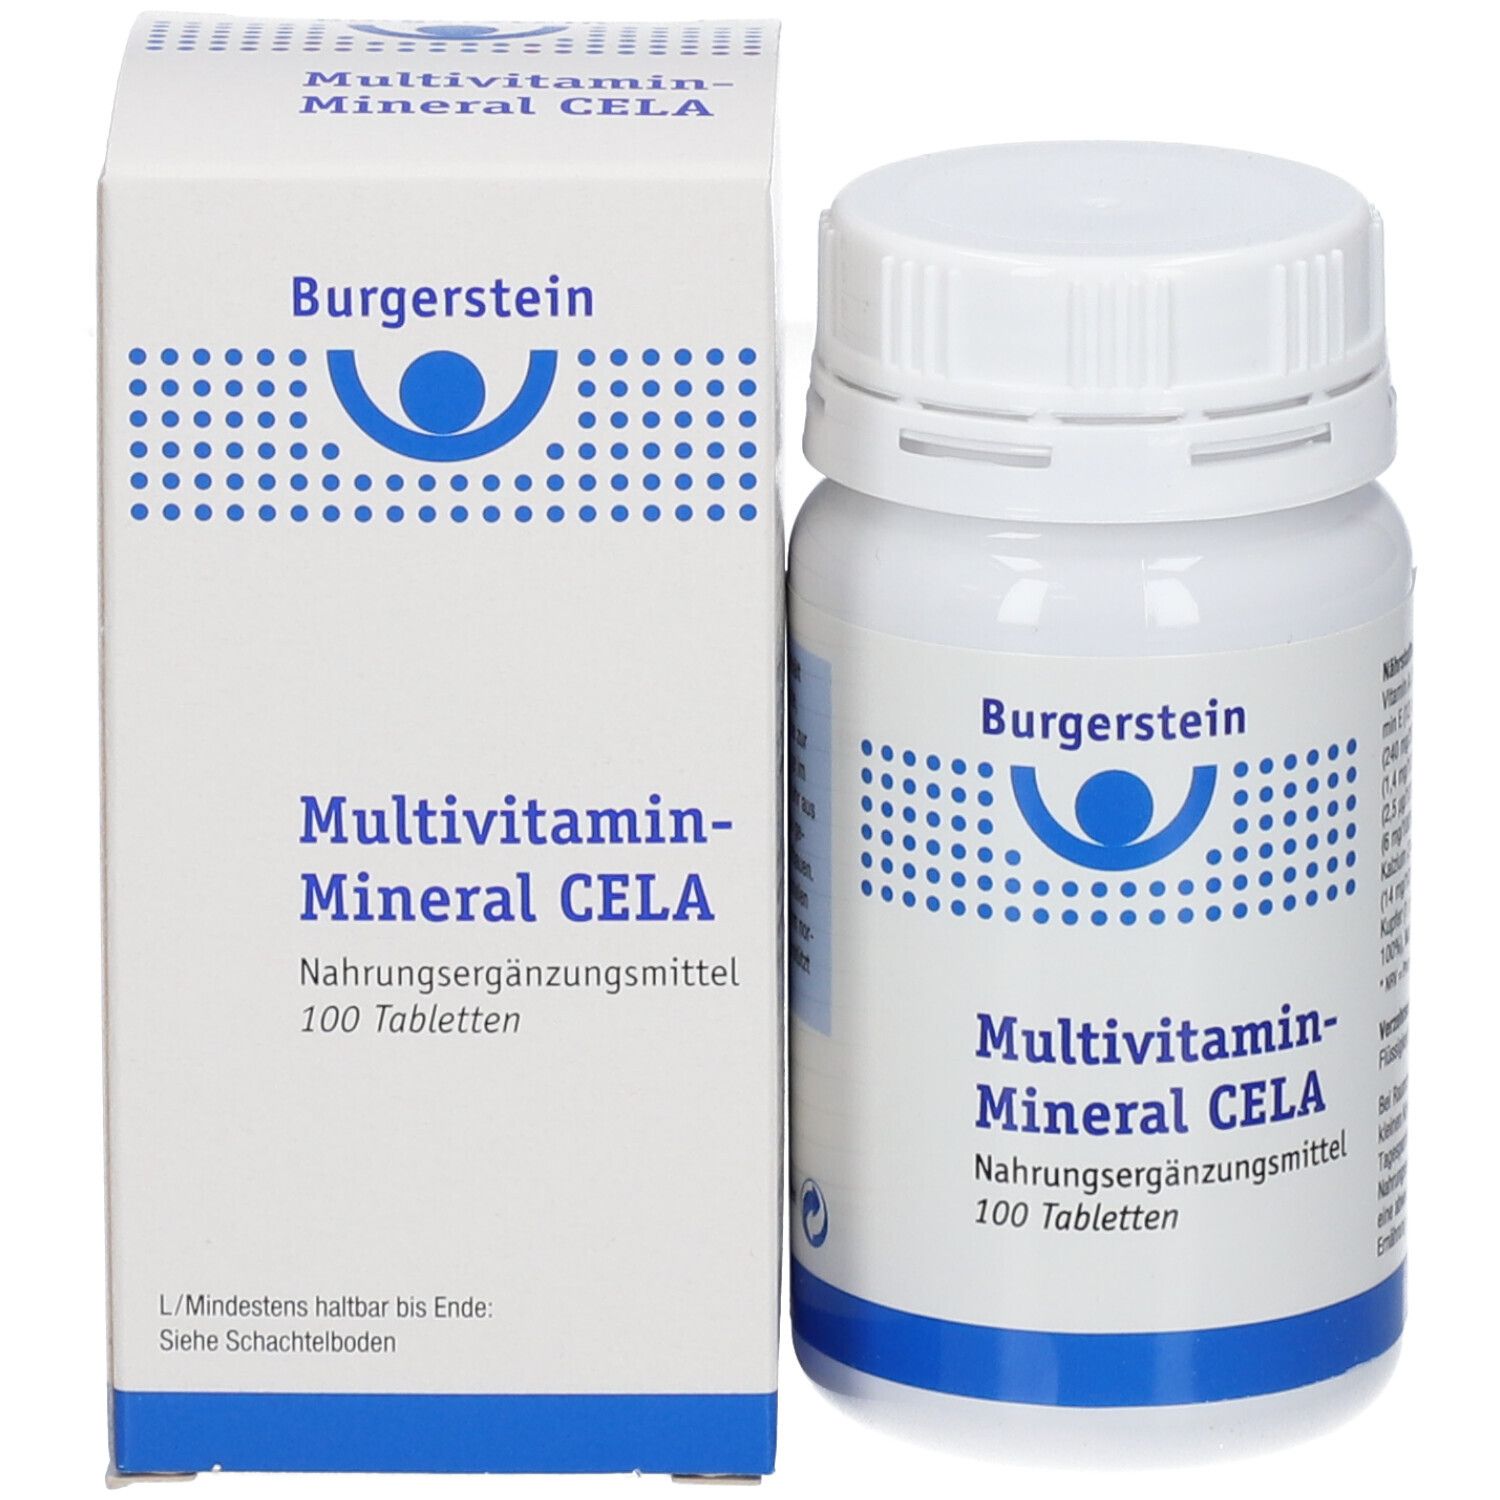 Burgerstein Multivitamin-Mineral CELA